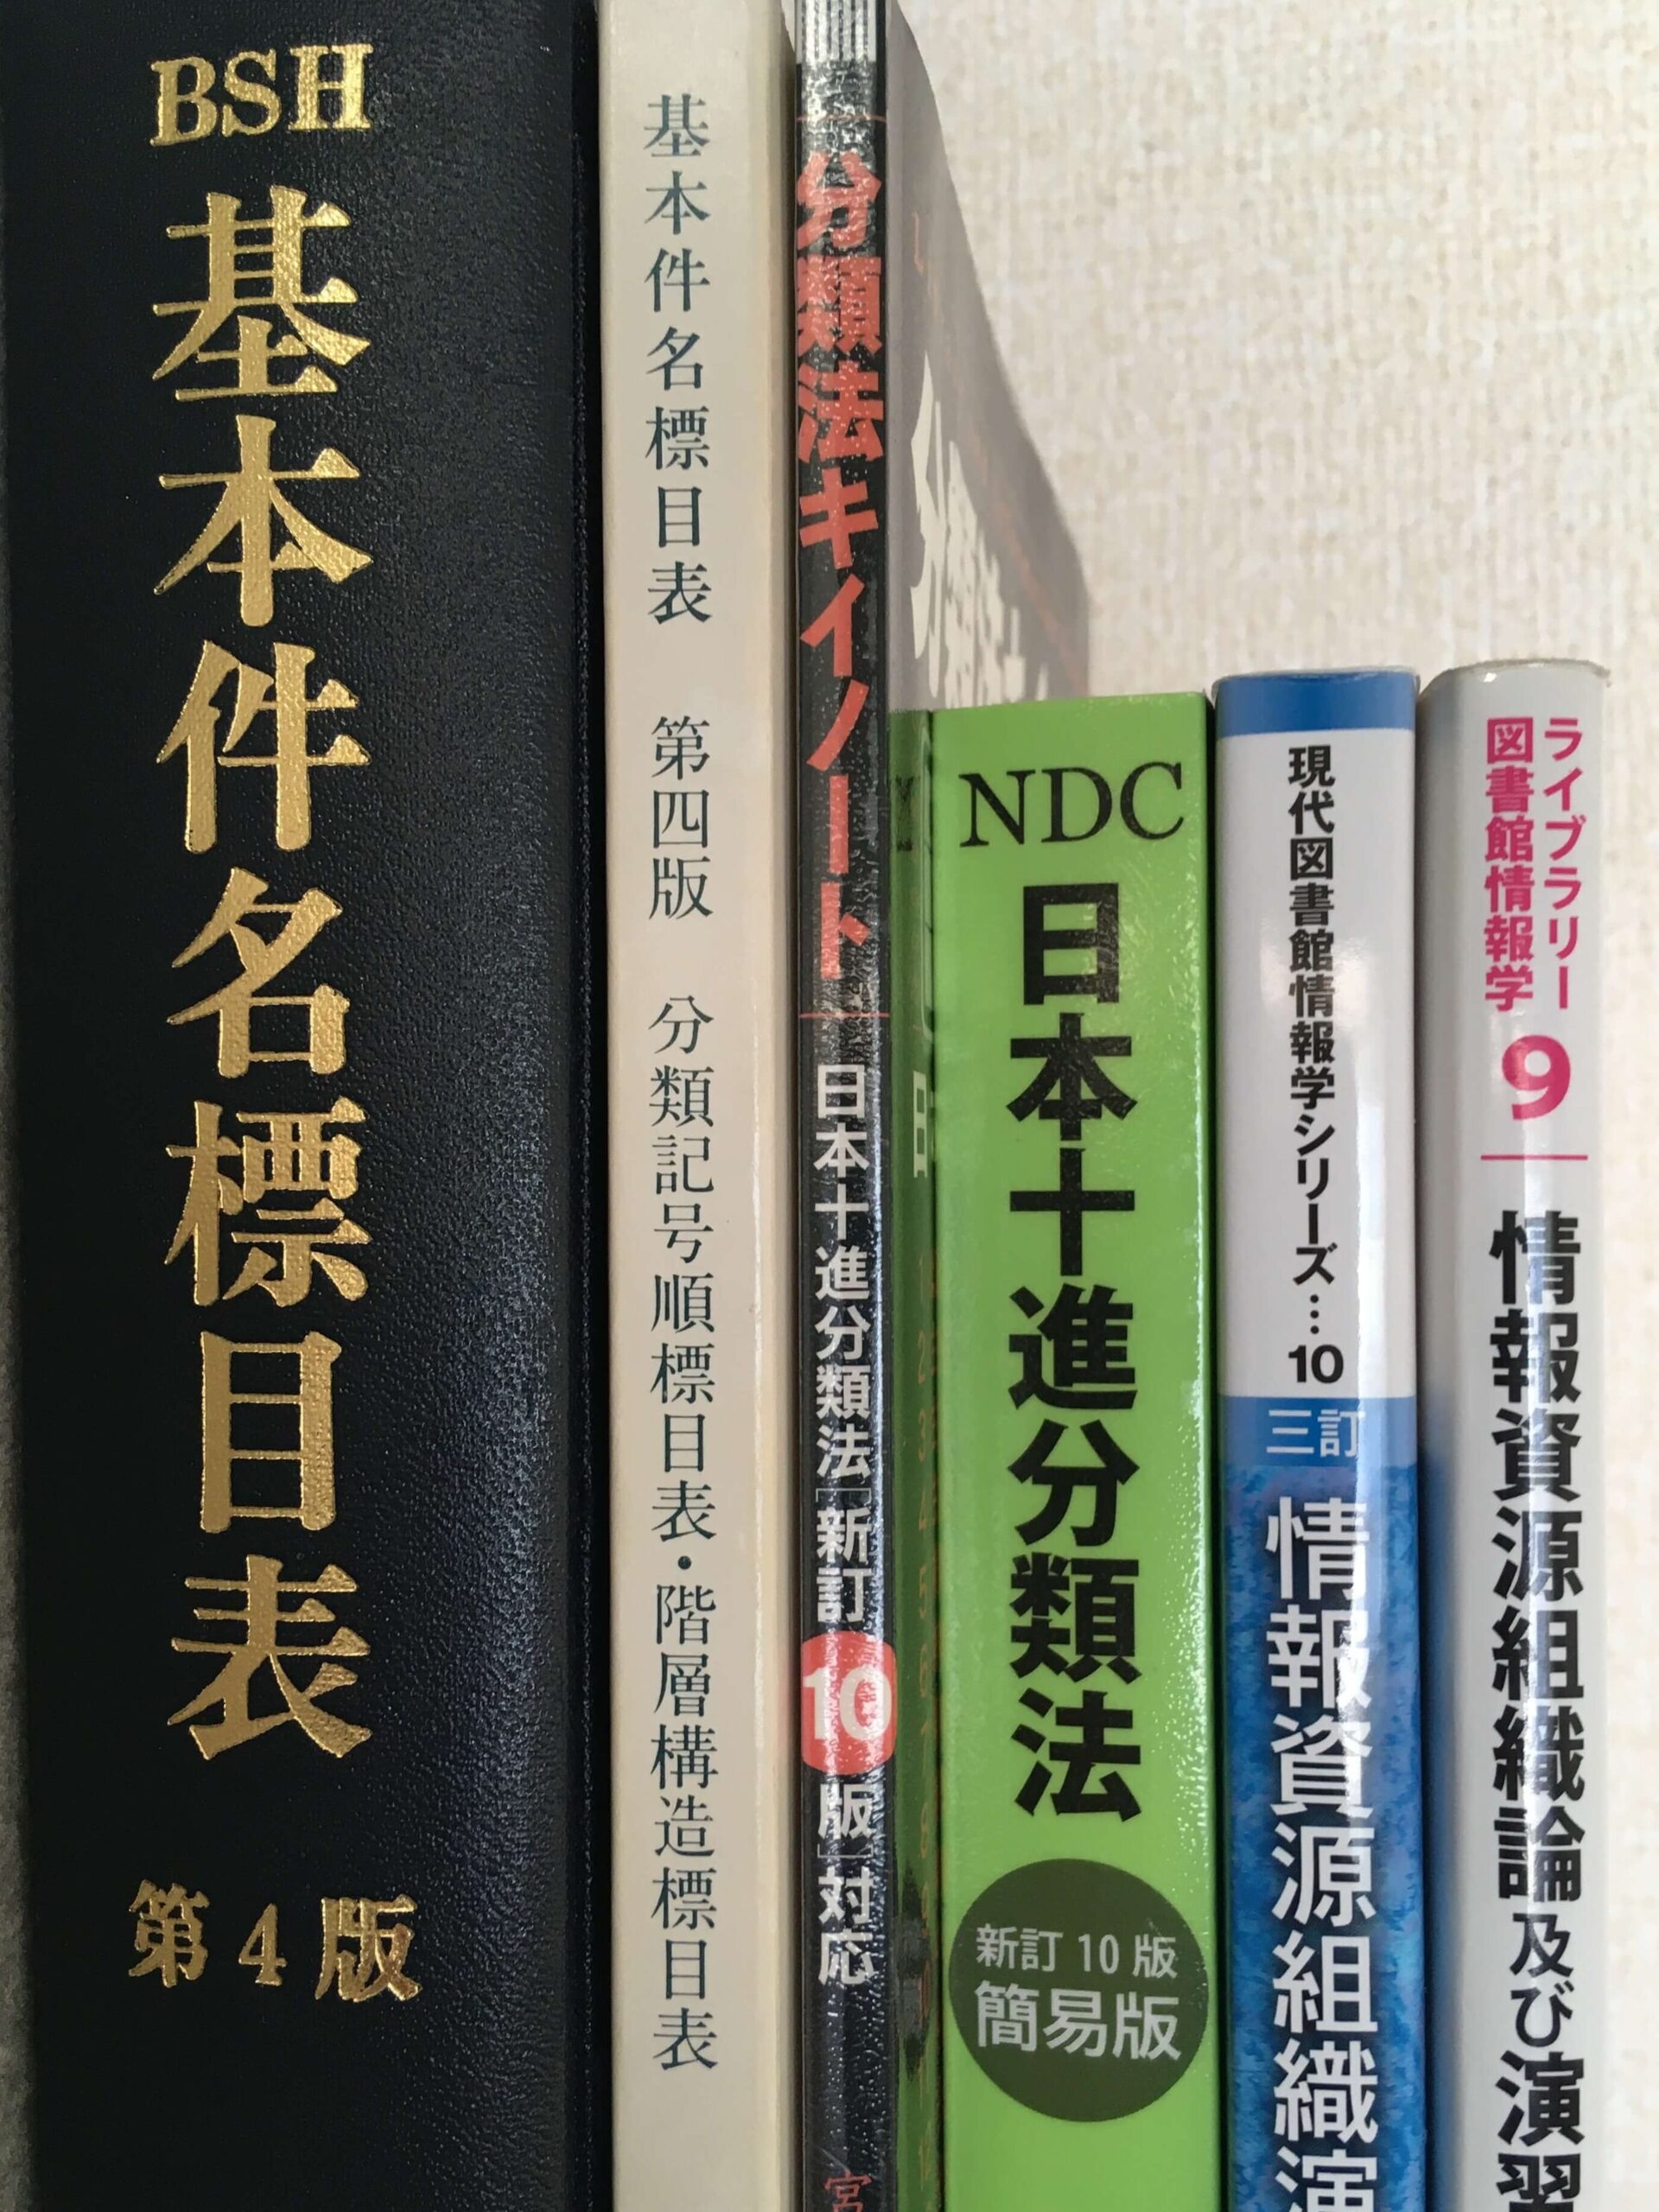 日本目録規則/日本十進分類法/基本件名標目-